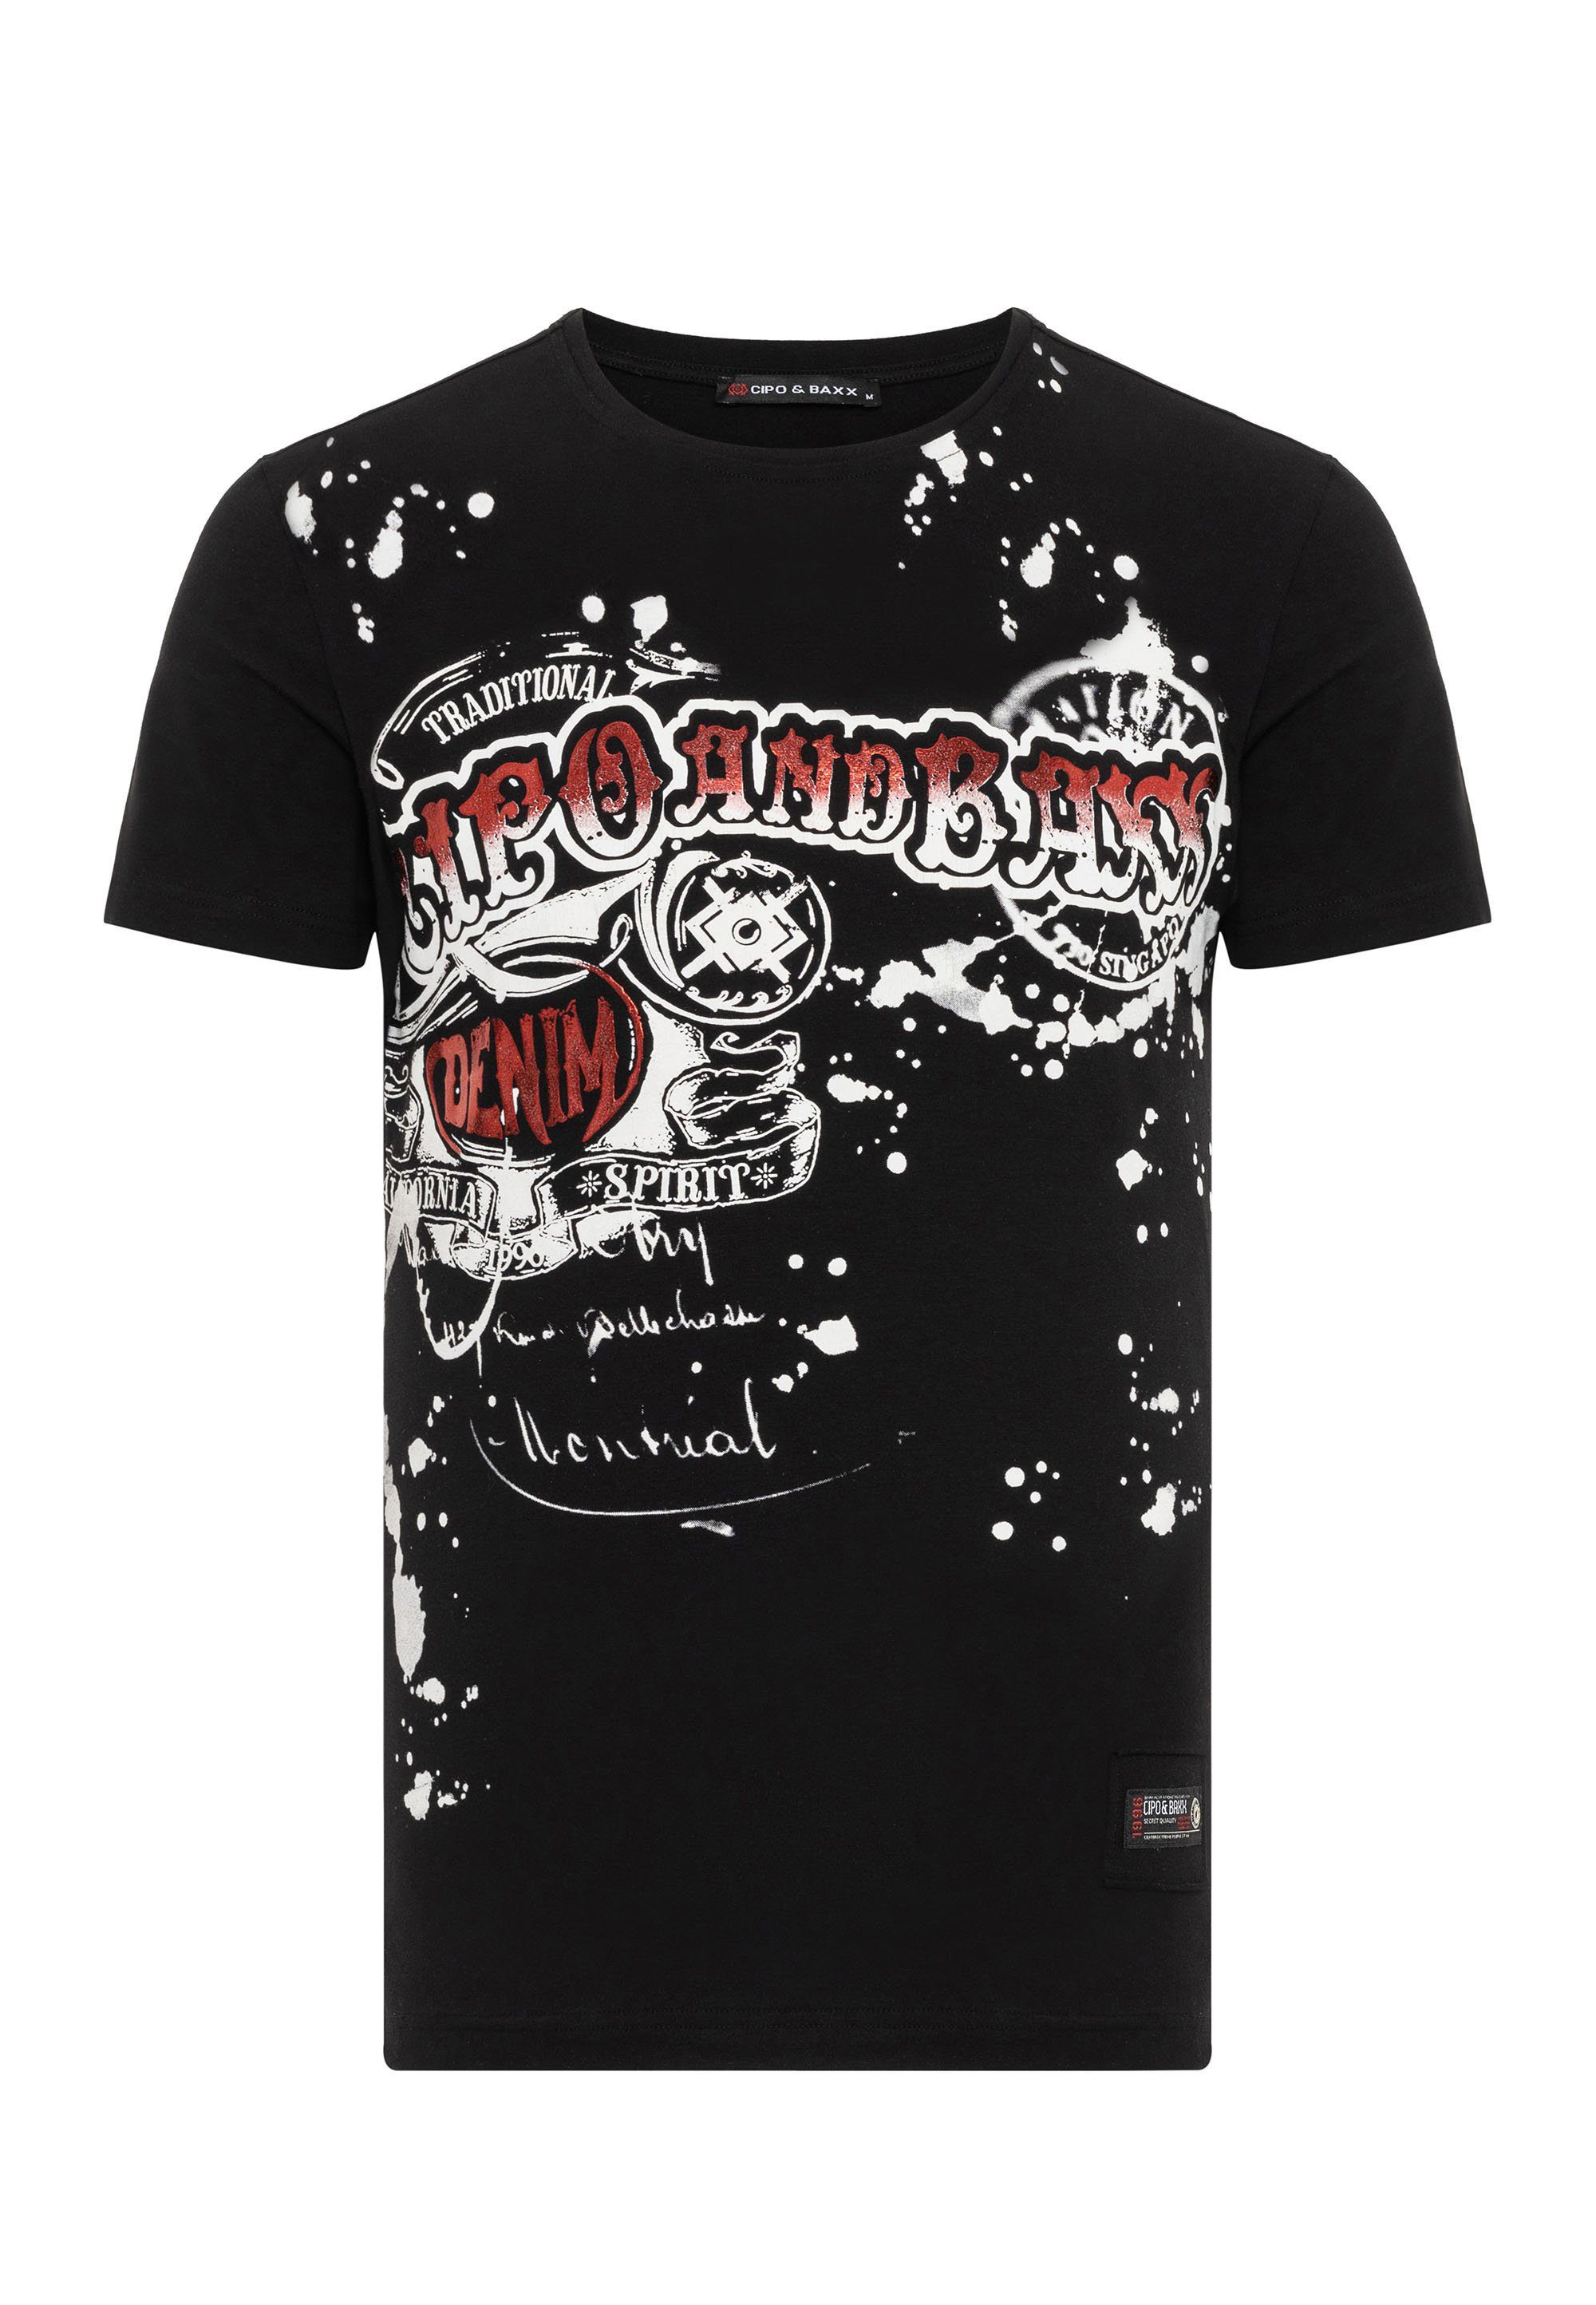 mit & Baxx Cipo T-Shirt Markenprint coolem schwarz